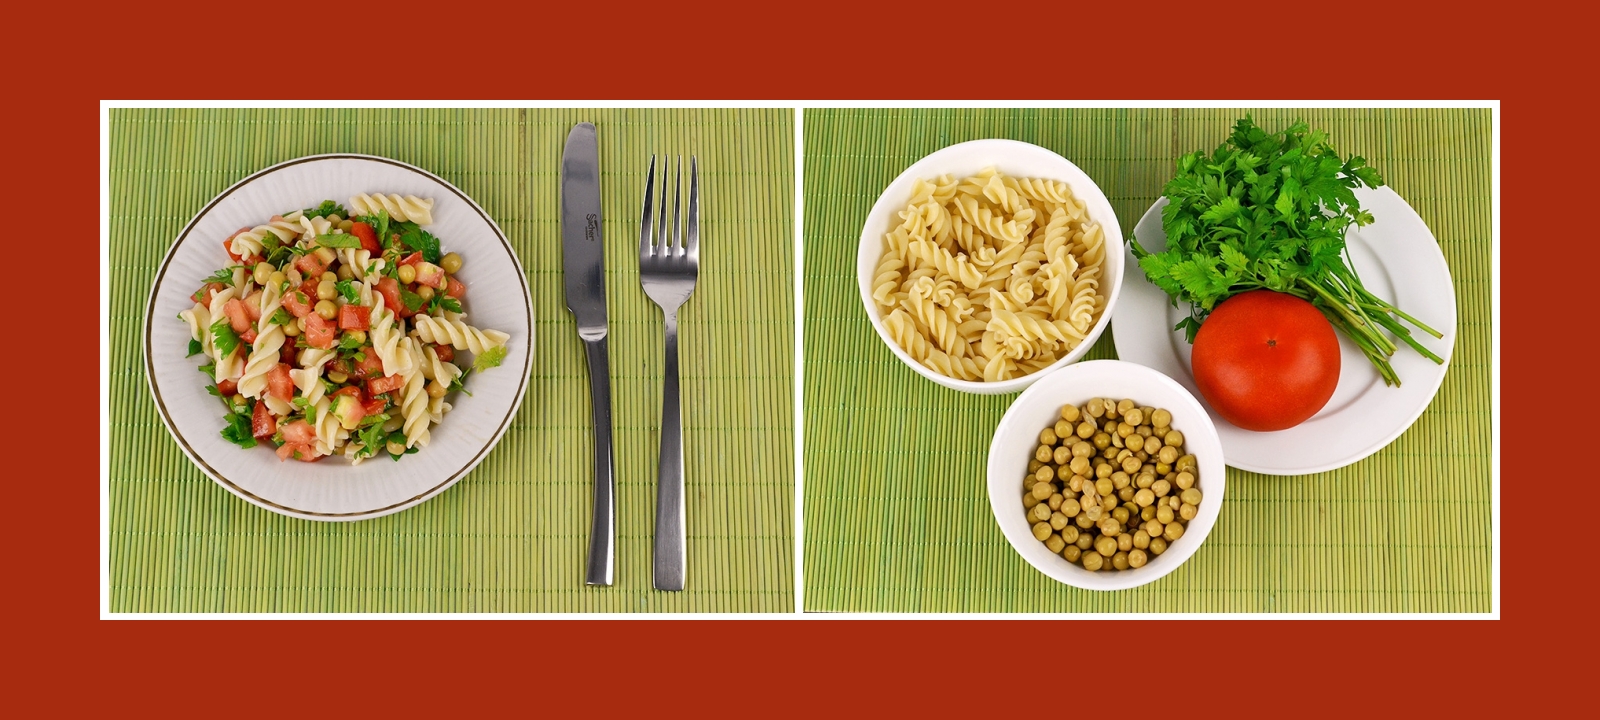 Leckerer Minuten-Salat mit Nudeln, Erbsen, Tomaten und pikanten Kräutern